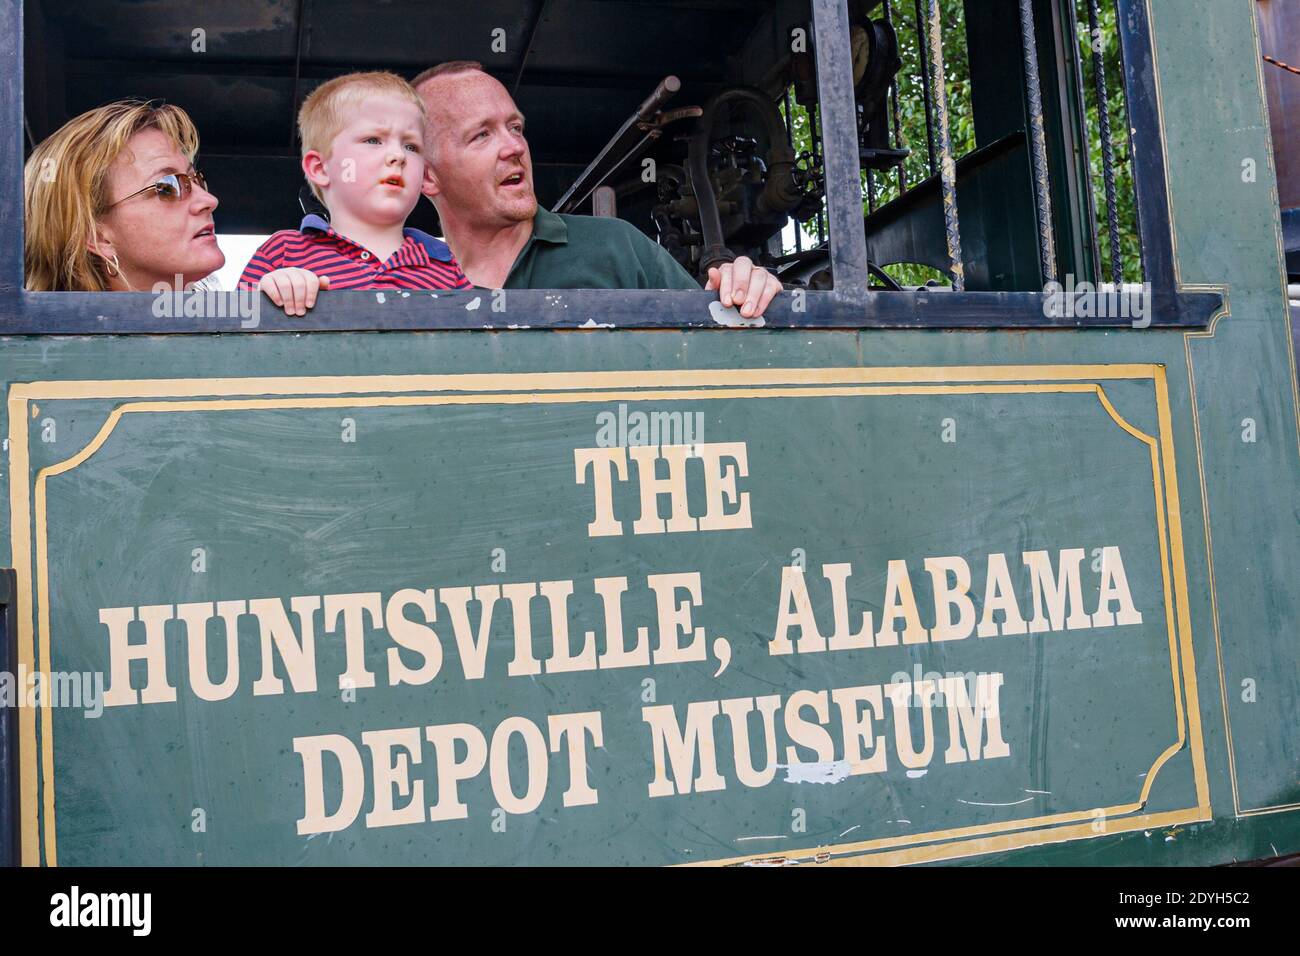 Huntsville Alabama, Depot Museum baute 1860 Bahnhof, Mutter Vater Sohn Familie Besucher, Stockfoto